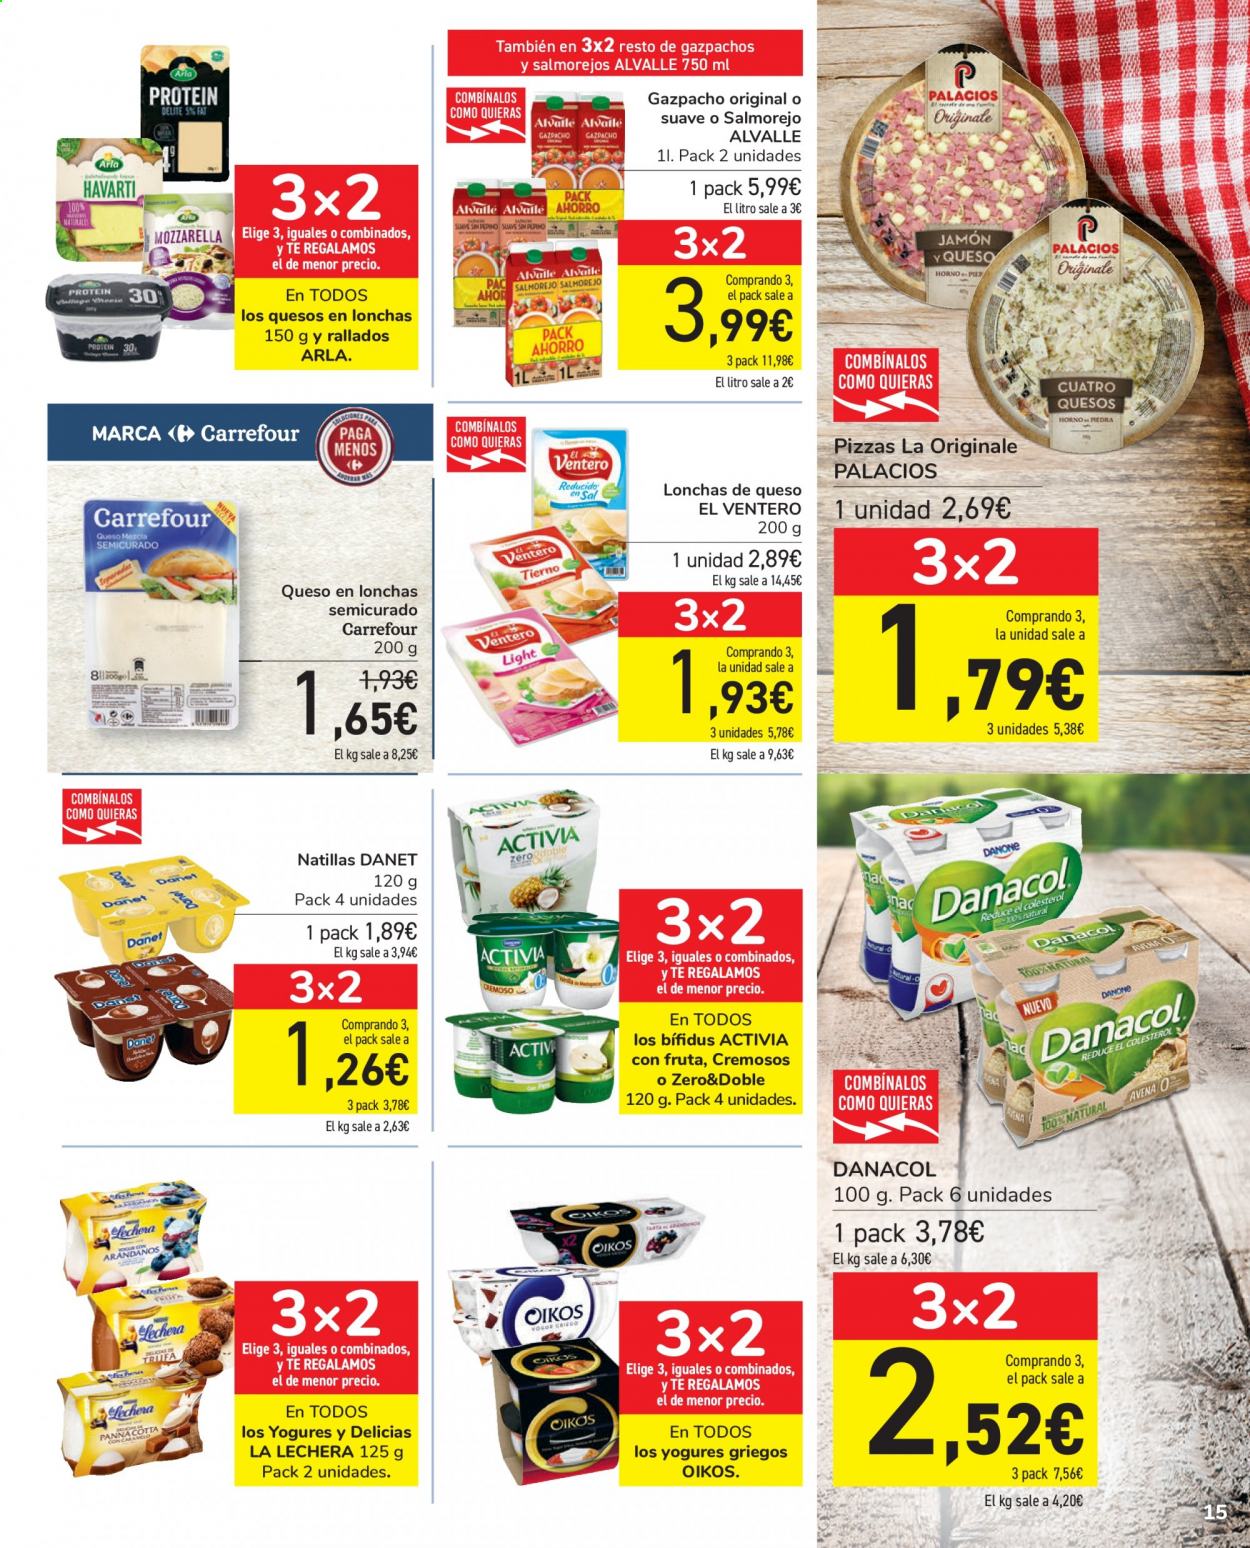 thumbnail - Folleto actual Carrefour - 27/04/21 - 10/05/21 - Ventas - queso, Arla, natillas, Danacol, La Lechera. Página 15.